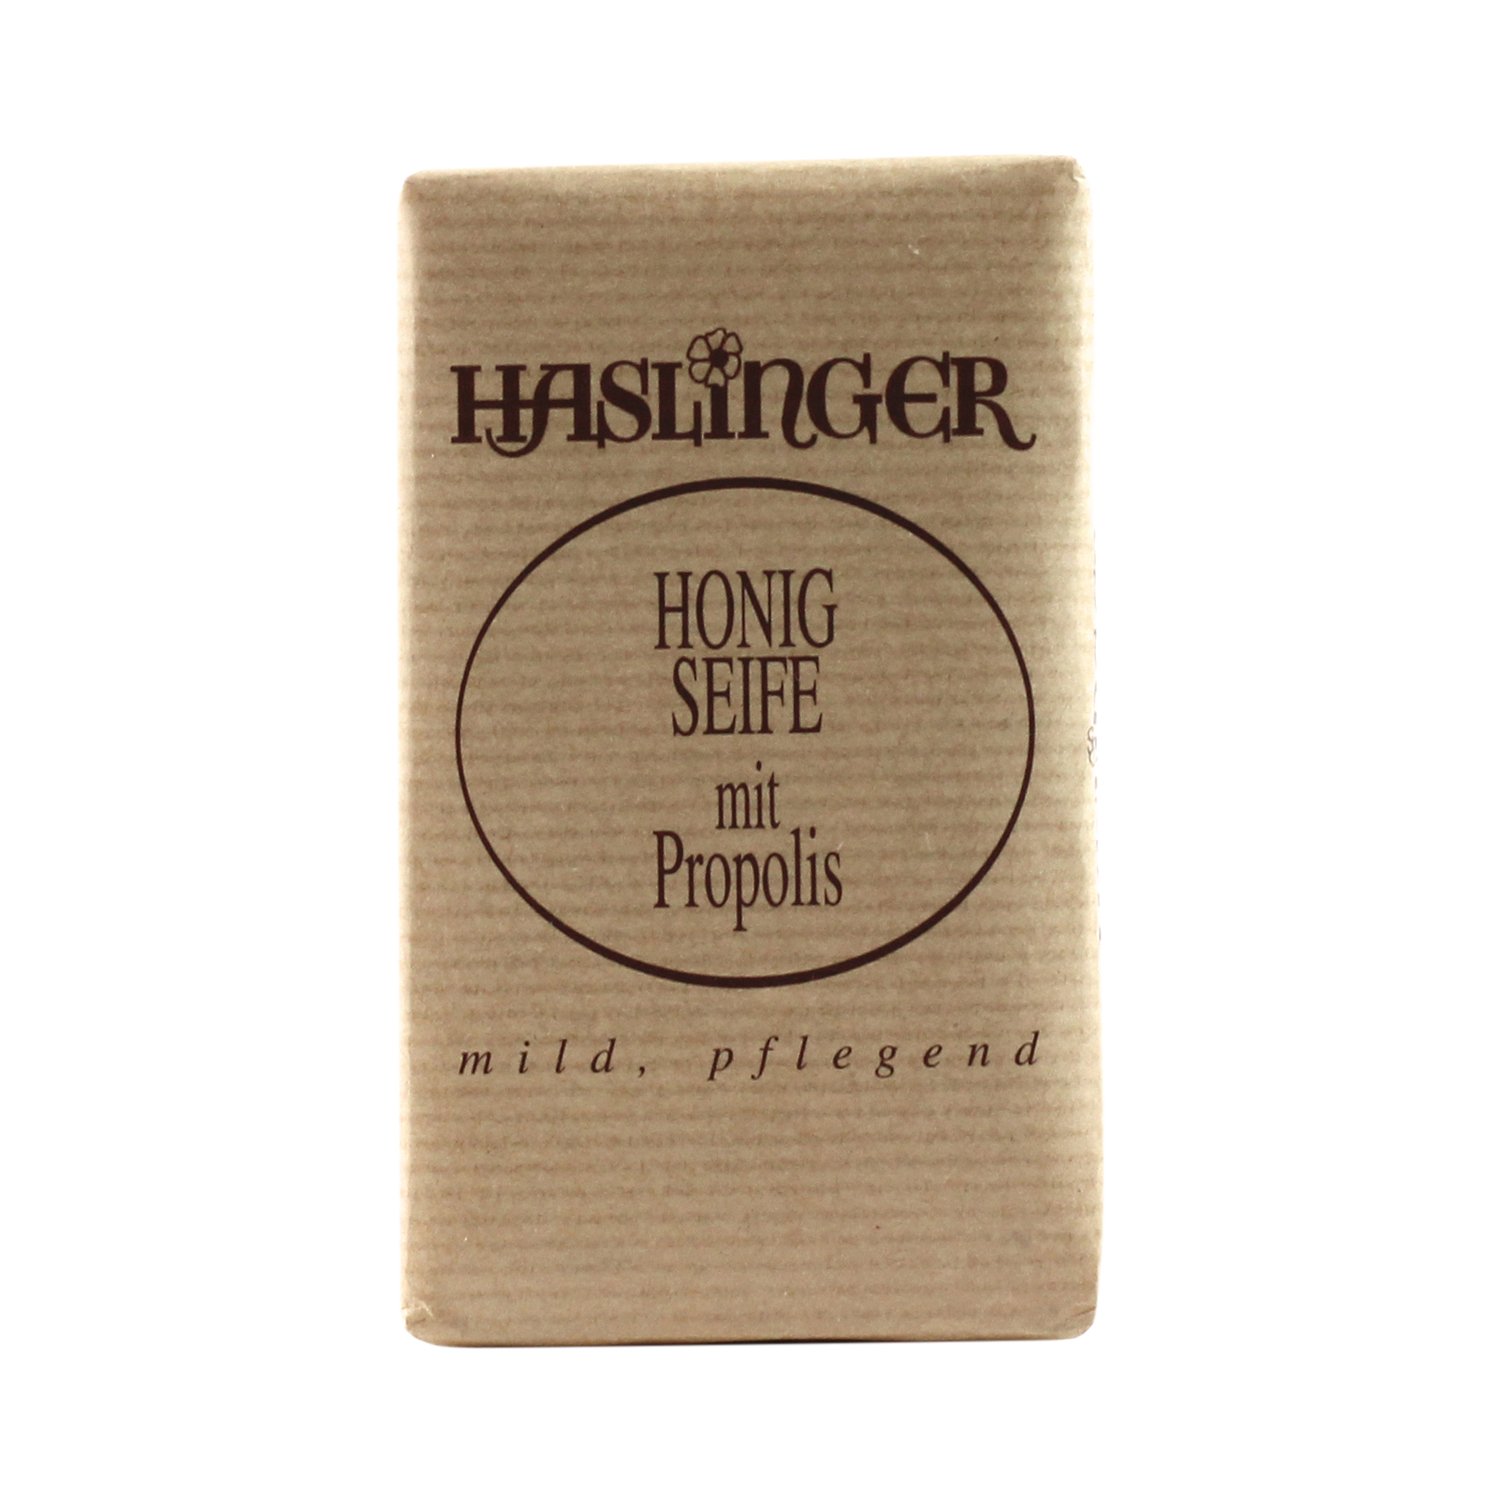 Haslinger - Honig Seife - Propolis